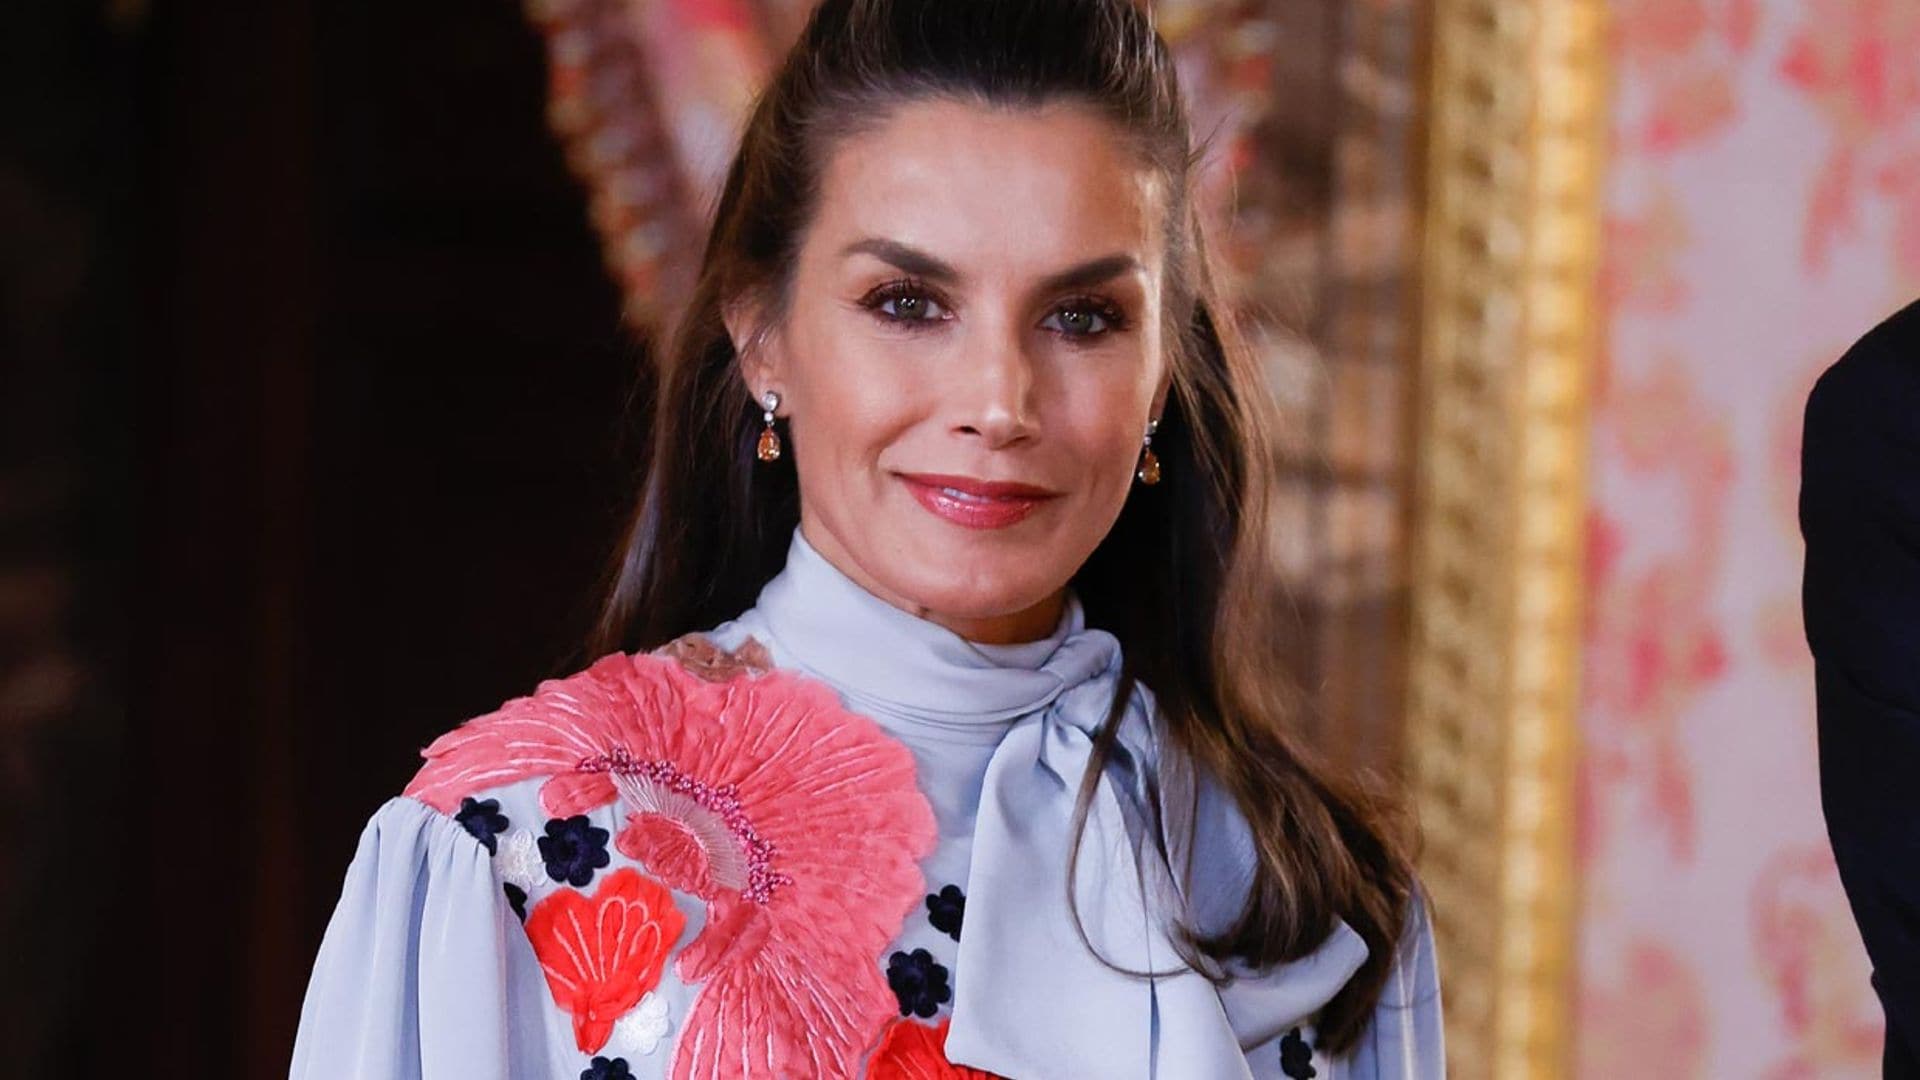 La Reina recicla su vestido de flores 3D en su primer acto sin mascarilla en España